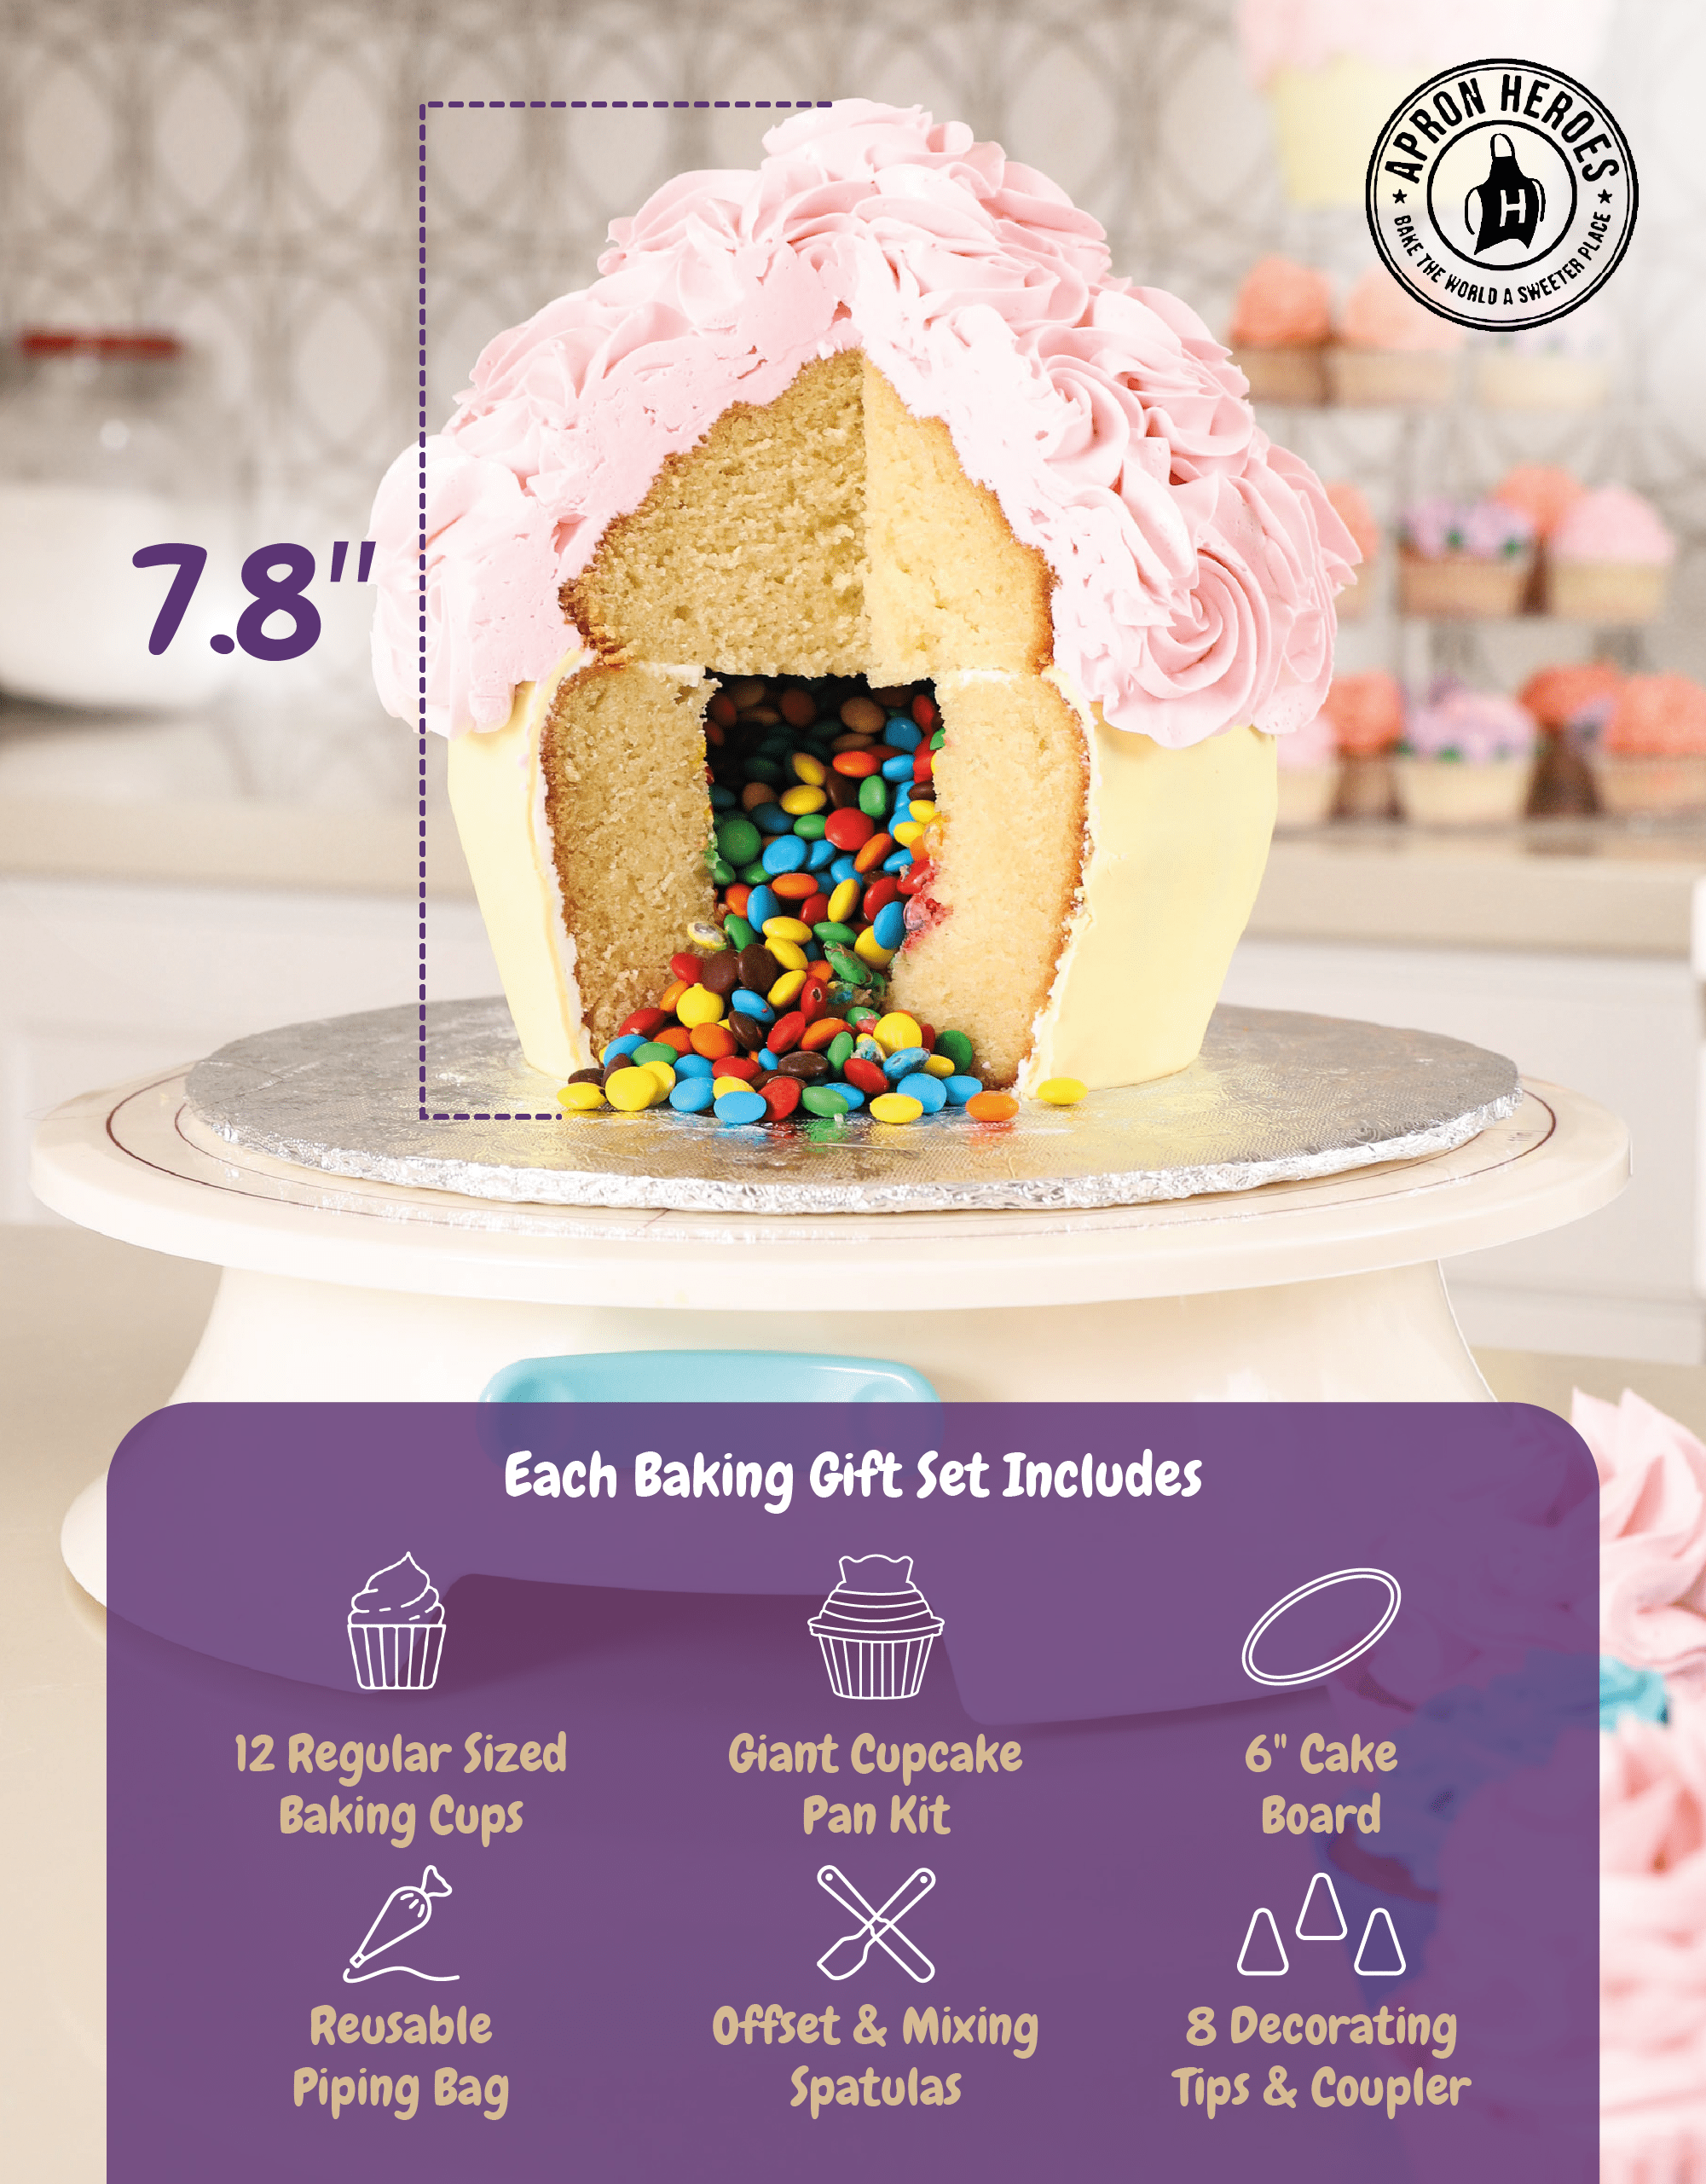 3Pcs Giant Big Silicone Cupcake Cake Mould Top Cupcake Bake Set